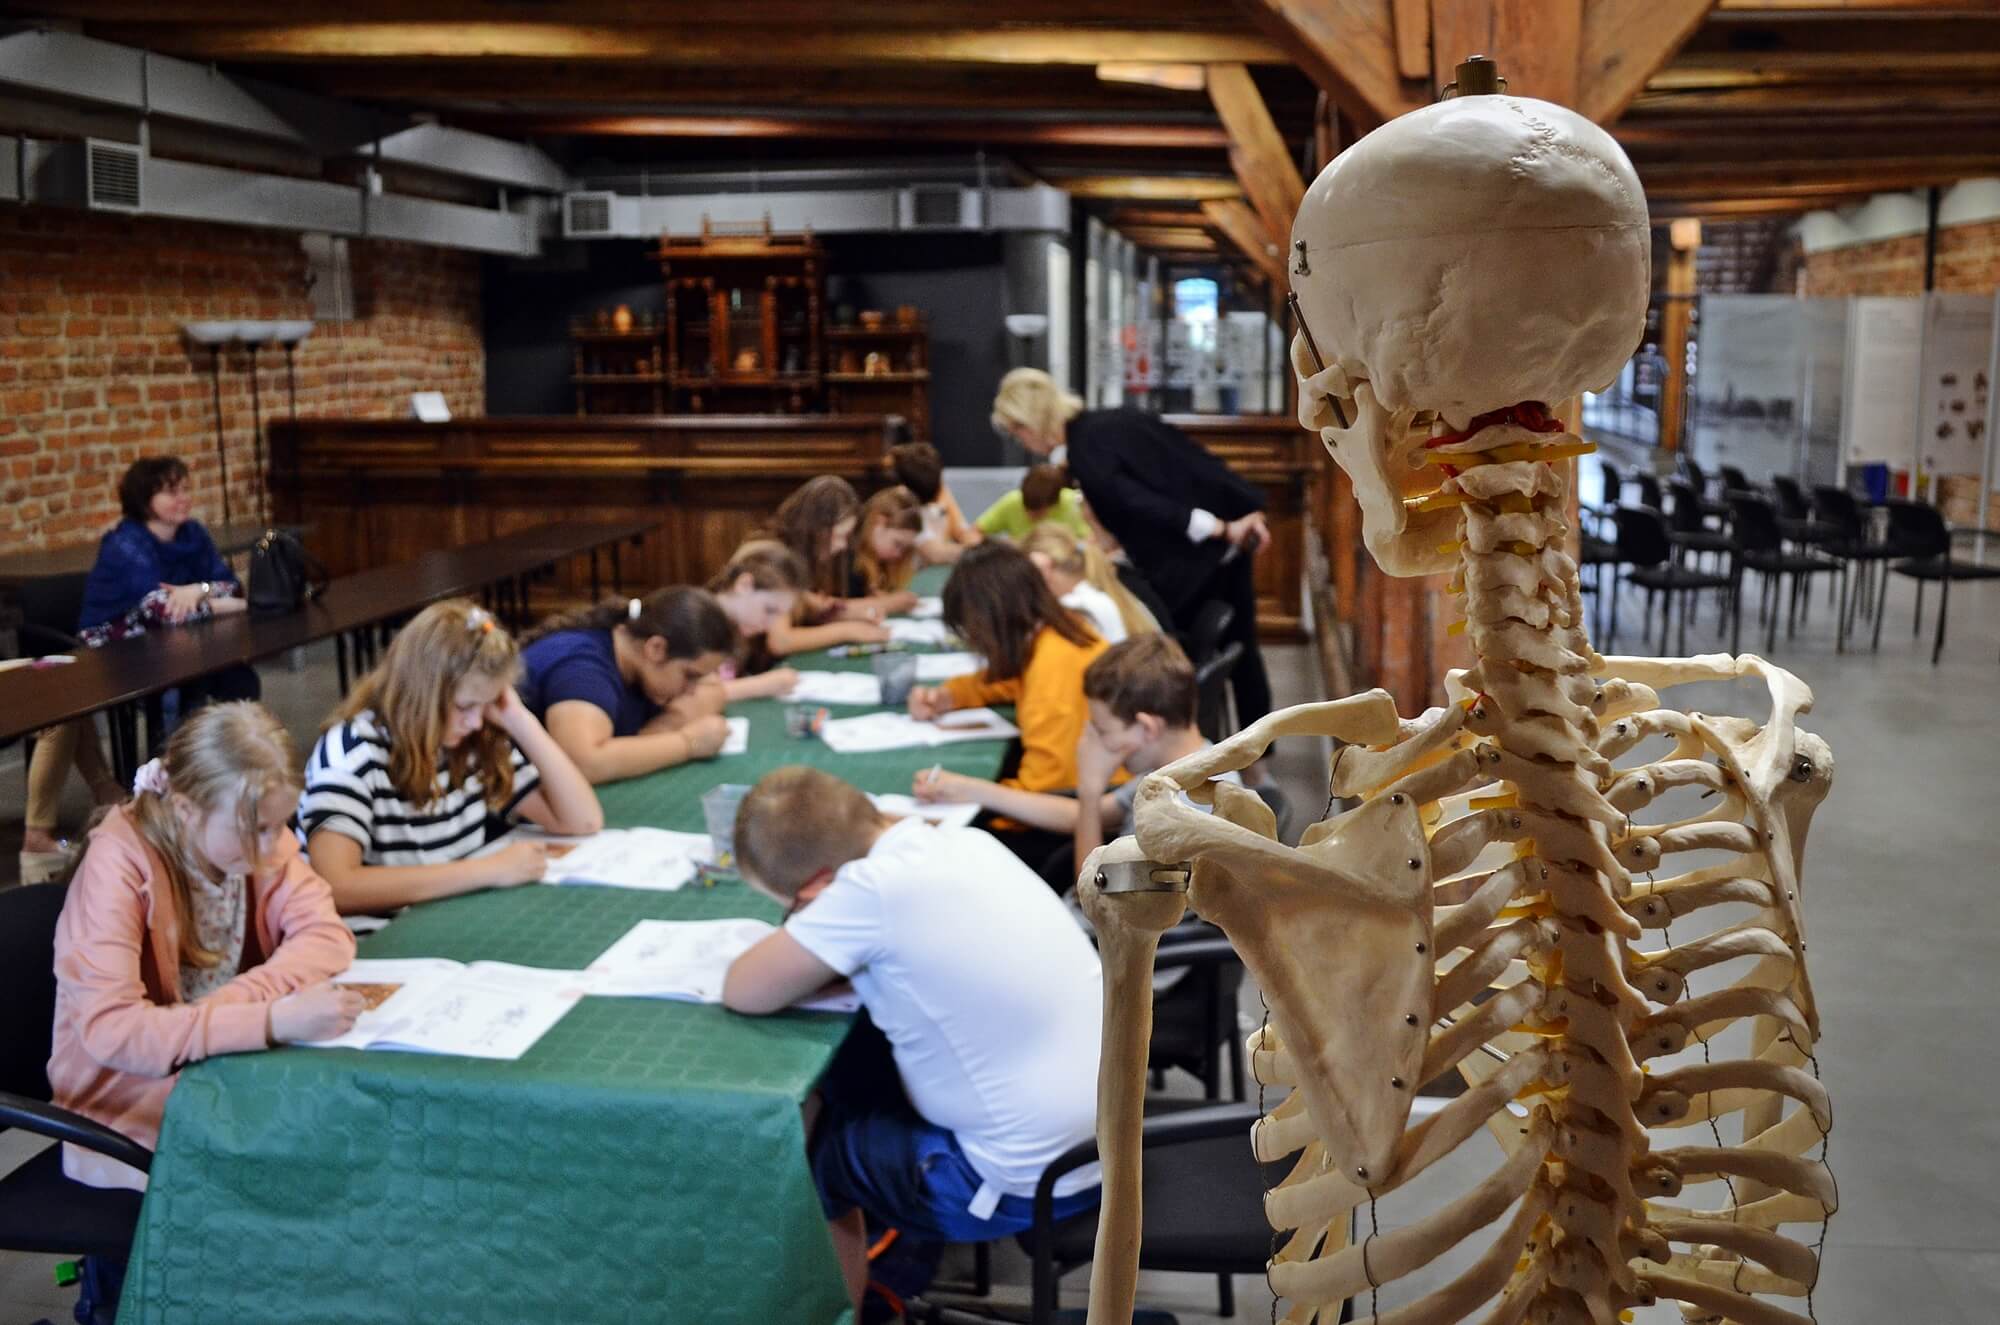 Zdjęcie przedstawia szkielet - pomoc dydaktyczną na stojaku - sfotografowany od tyłu. W tle widać dzieci siedzące przy stole, pochylone nad zeszytami.